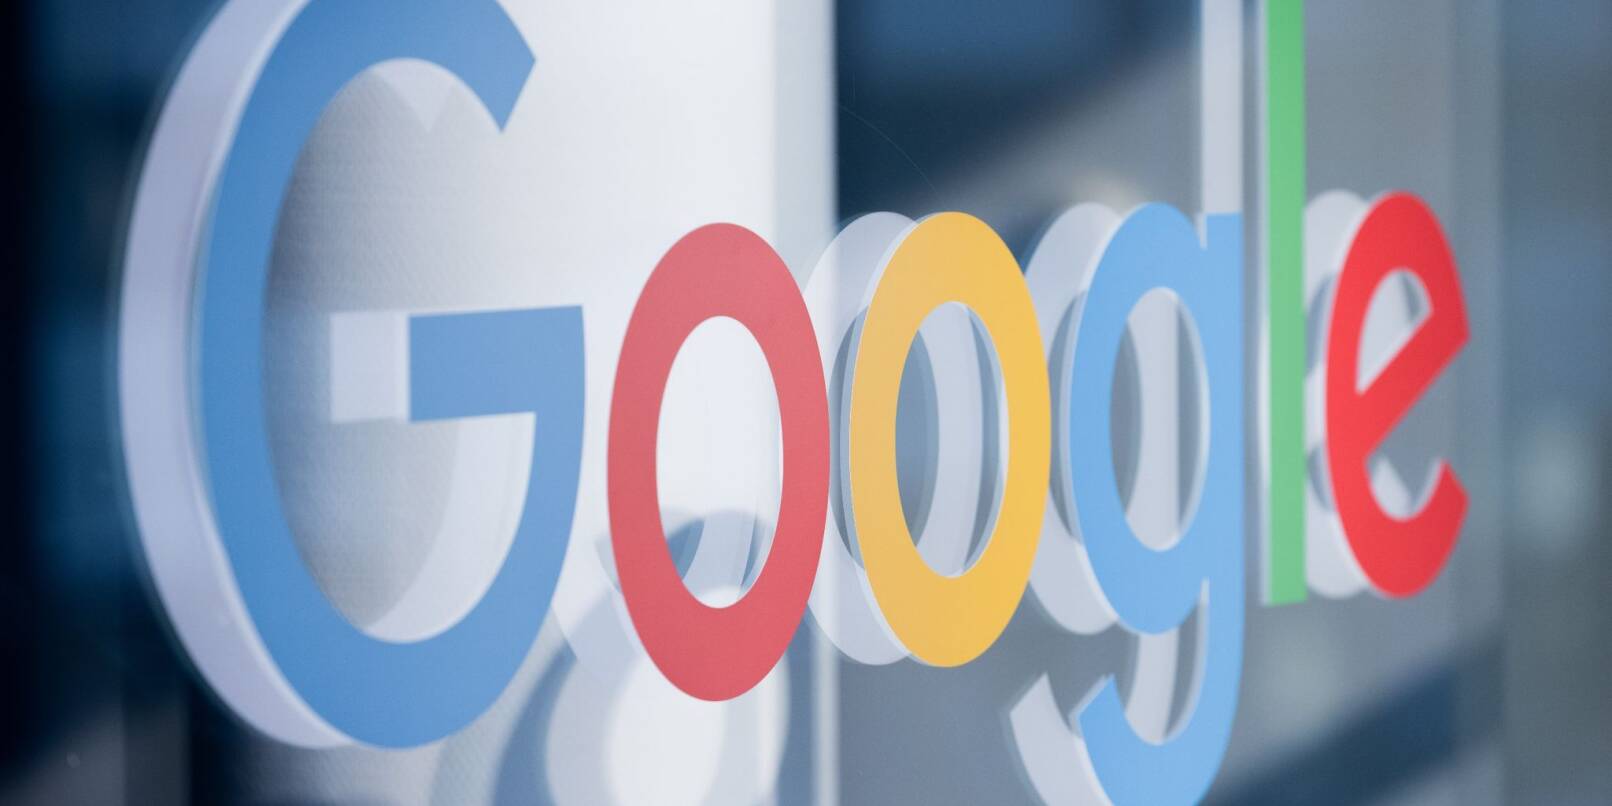 Google-Chef Sundar Pichai stellt Nutzern unter anderem eine bessere Websuche dank KI in Aussicht.